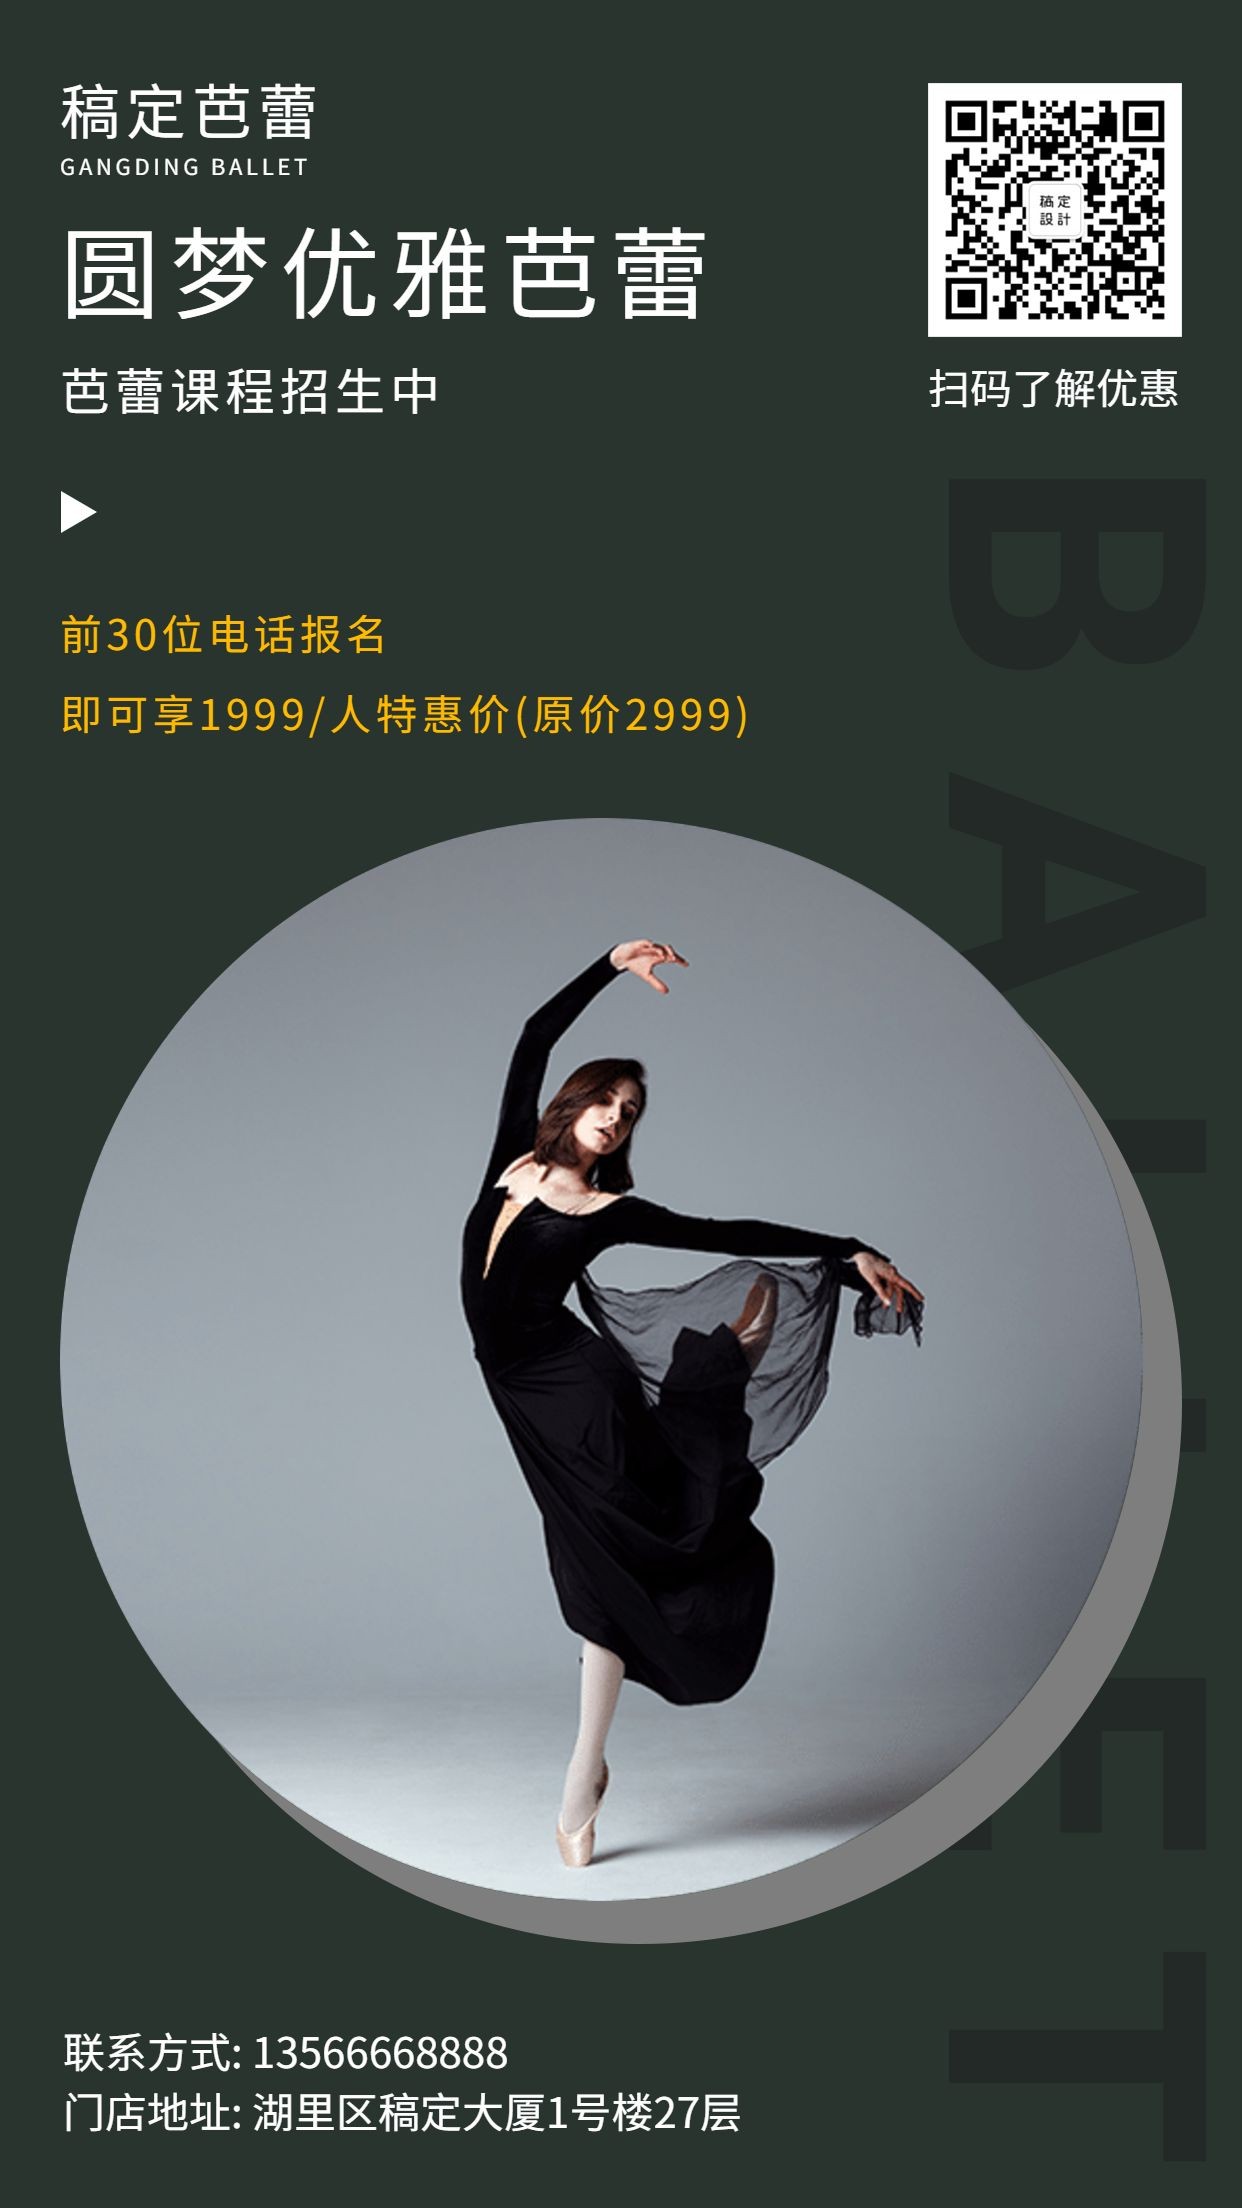 舞蹈培训/时尚/芭蕾课程招生/手机海报预览效果